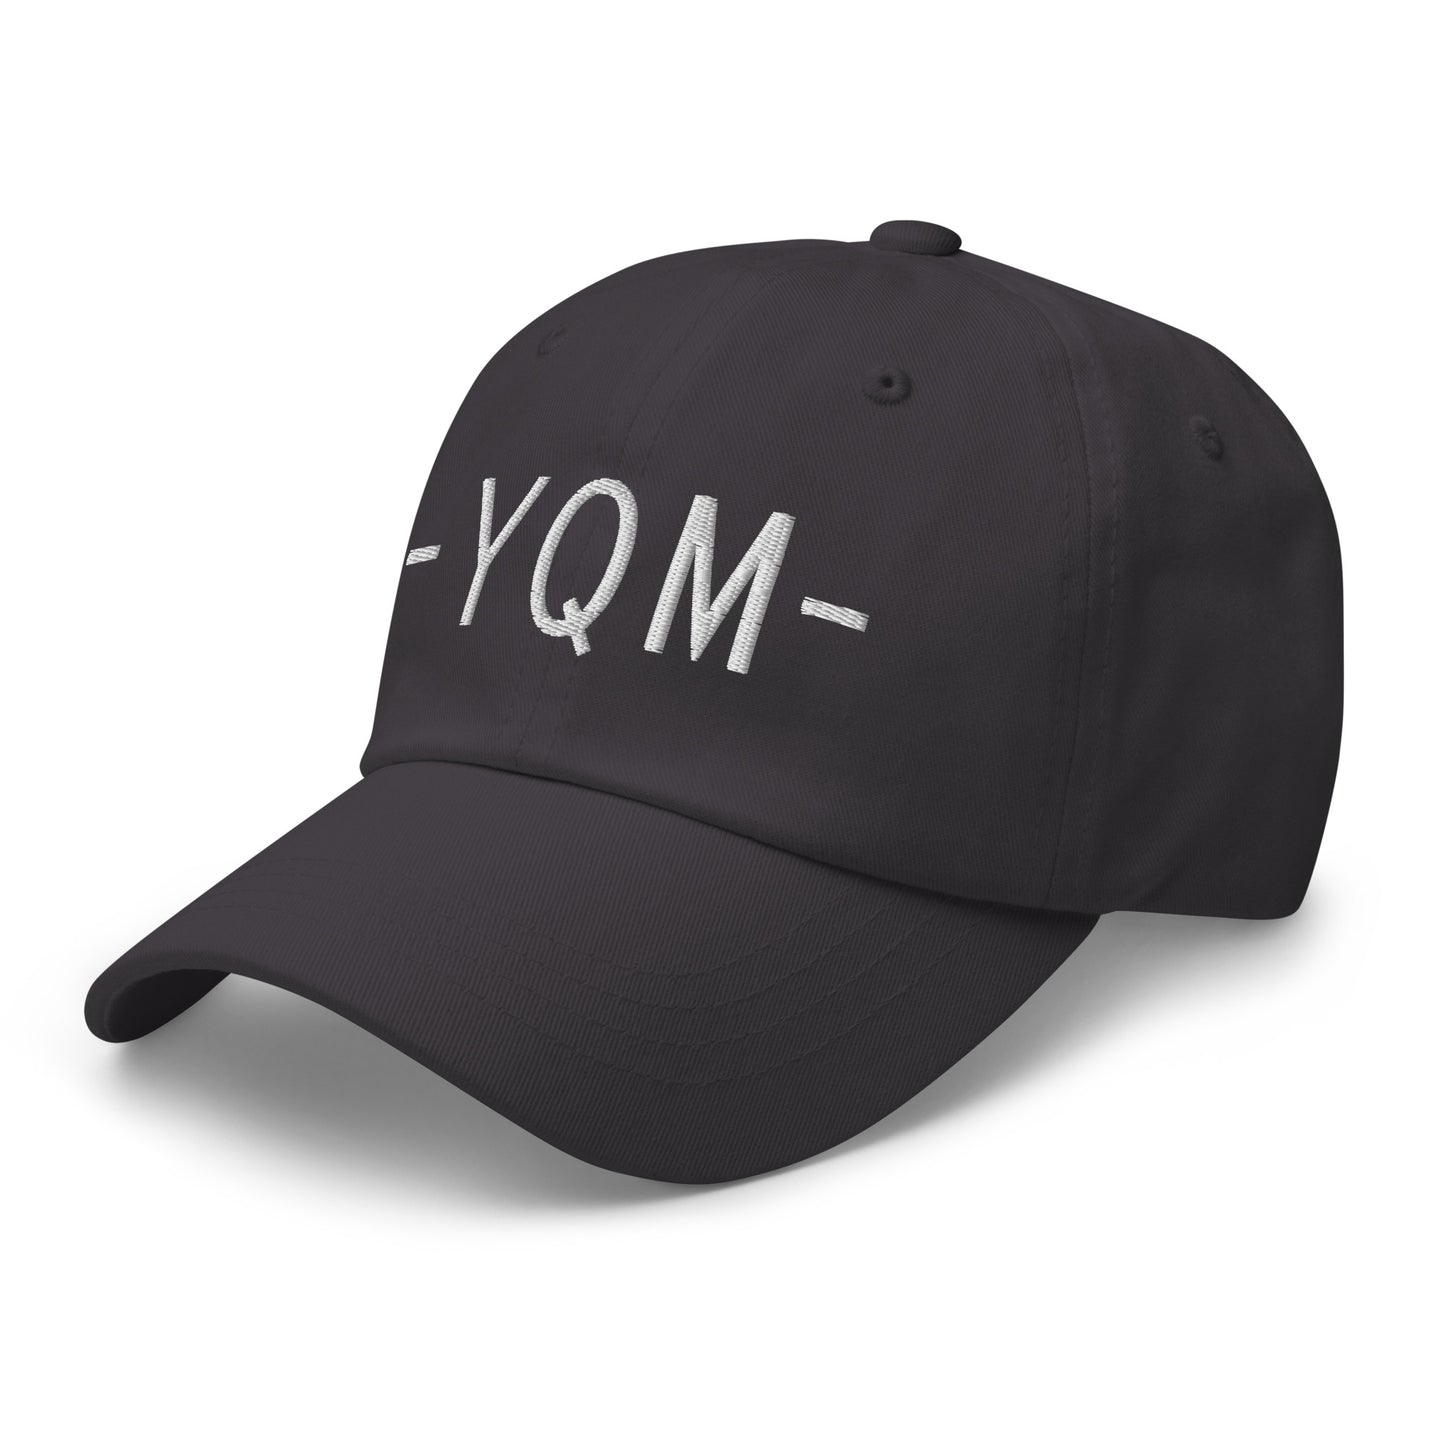 Souvenir Baseball Cap - White • YQM Moncton • YHM Designs - Image 20